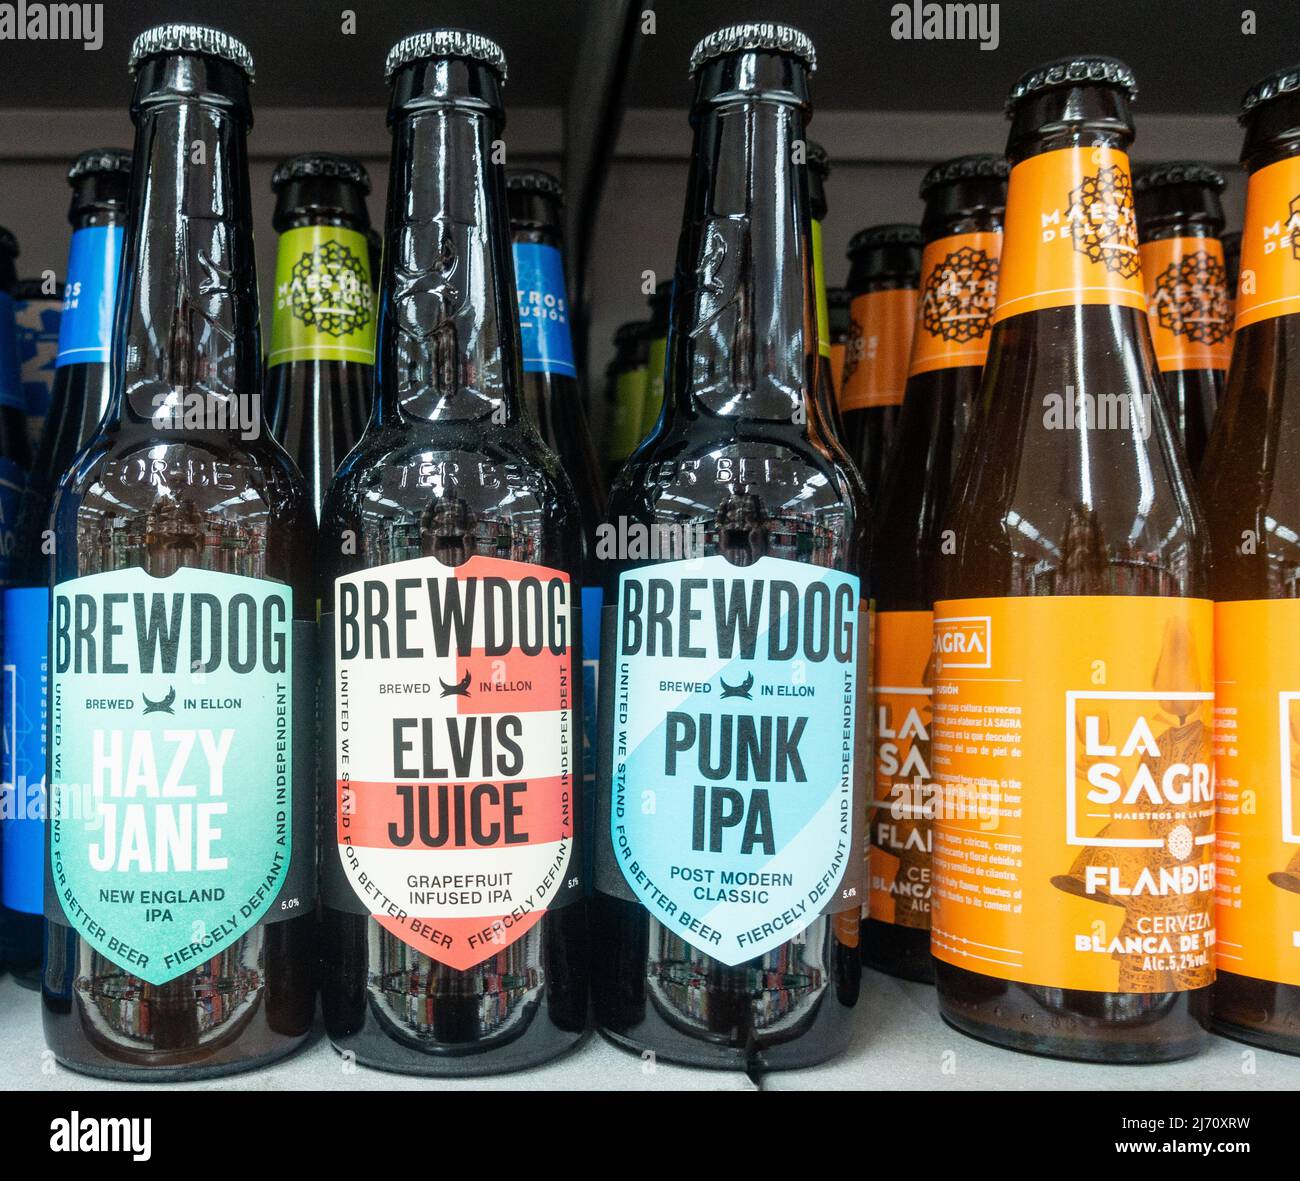 Bouteilles de bière Brechdog ( Hazy Jane, Elvis Juice, Punk IPA ) au supermarché espagnol Banque D'Images